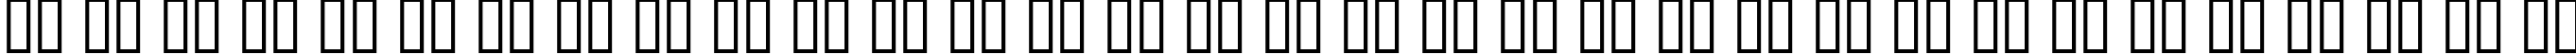 Пример написания русского алфавита шрифтом AucoinLight